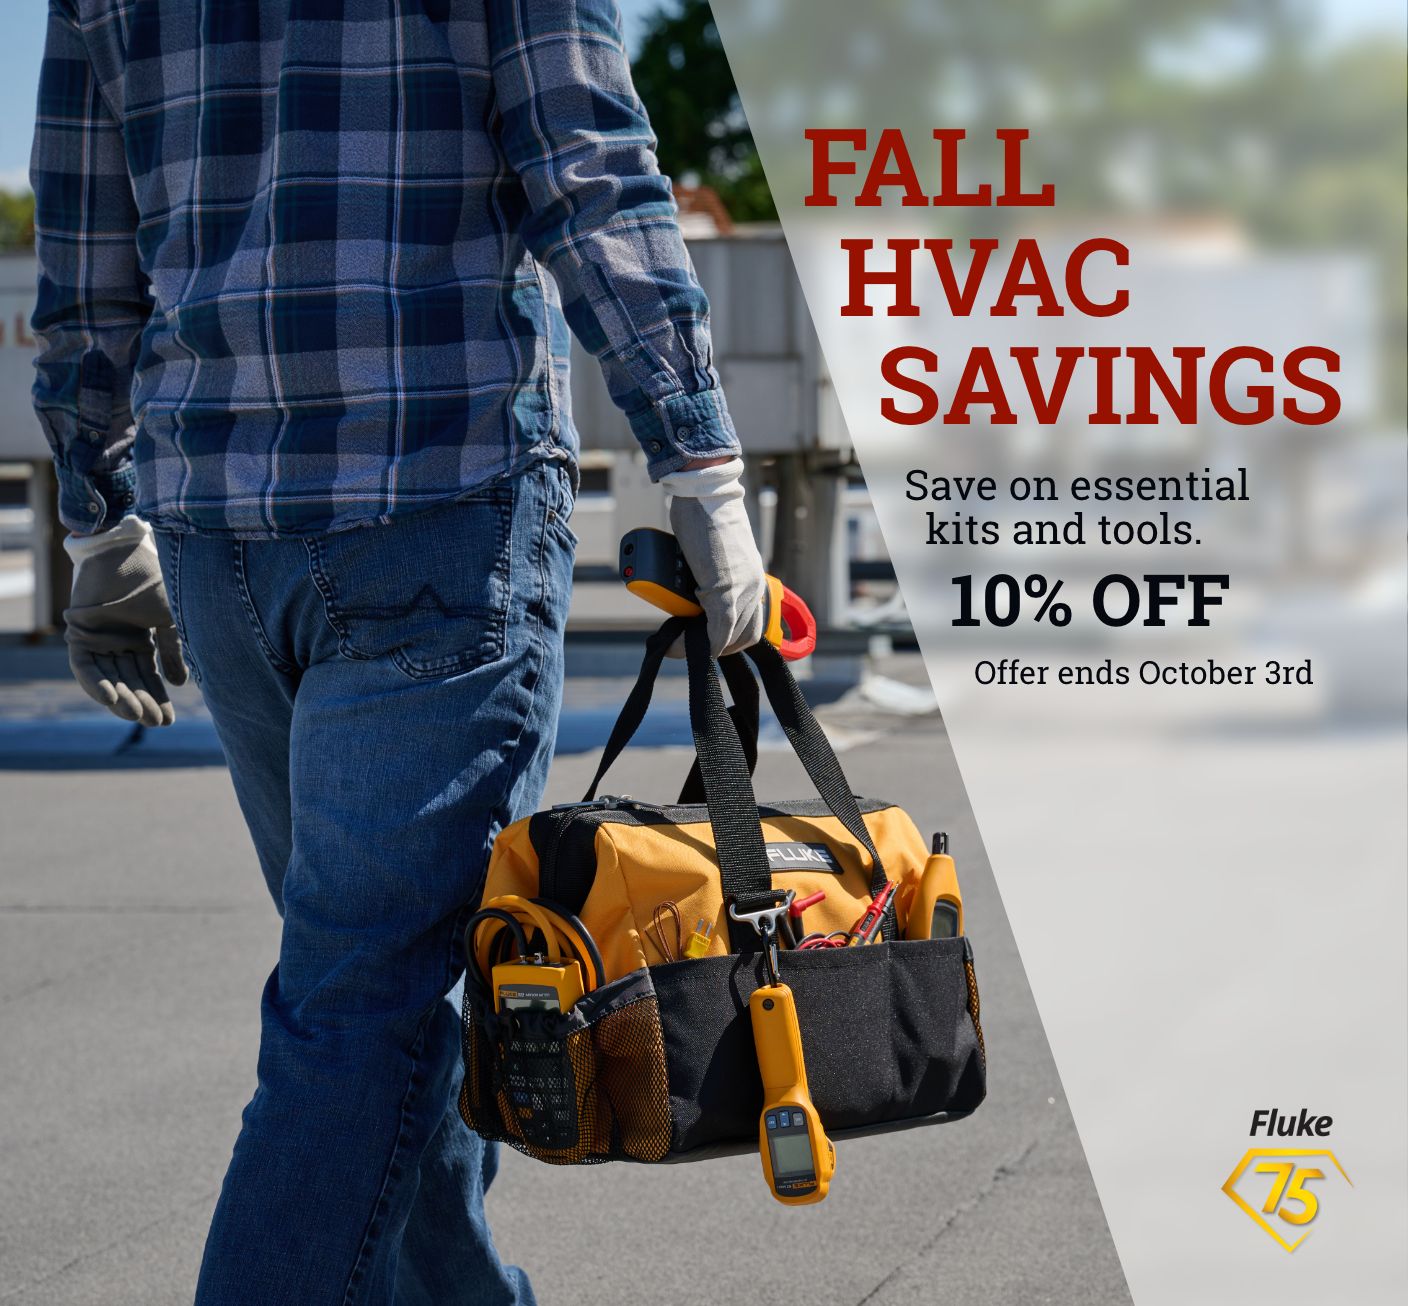 Fall HVAC Savings